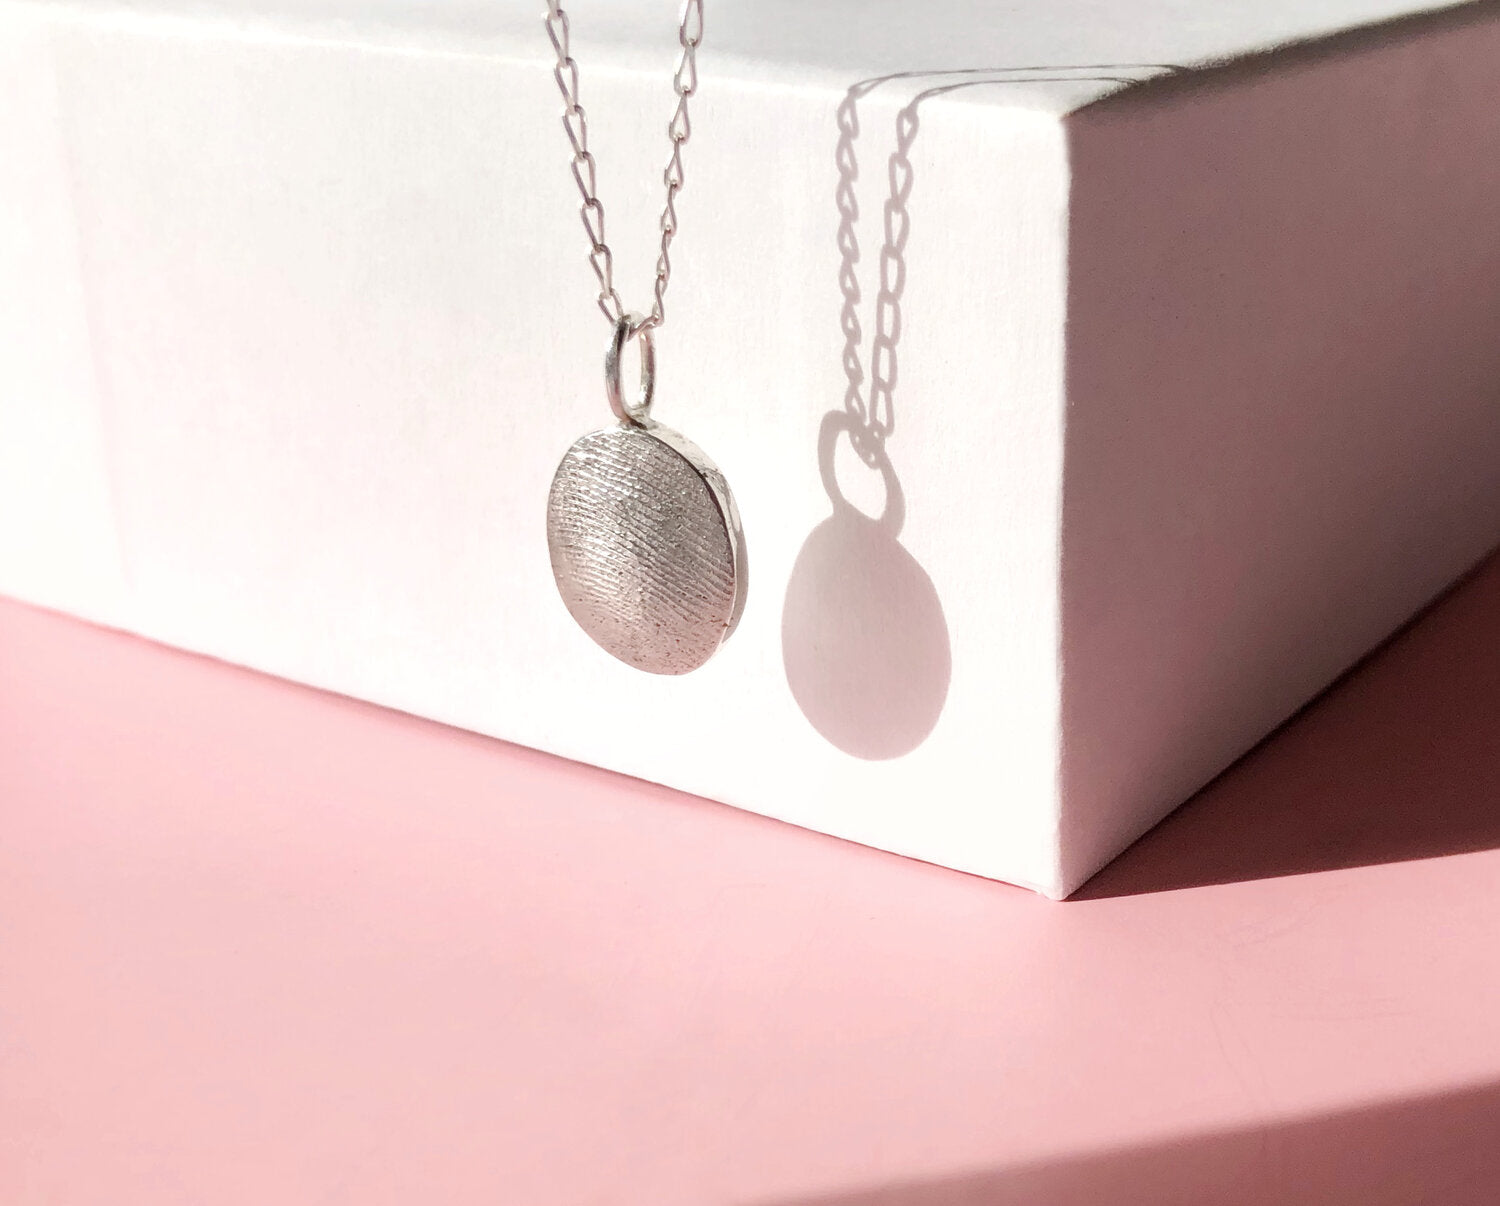 Oval or Circle Fingerprint Pendant - Sterling Silver - Fingerprint Impression Kit + Necklace